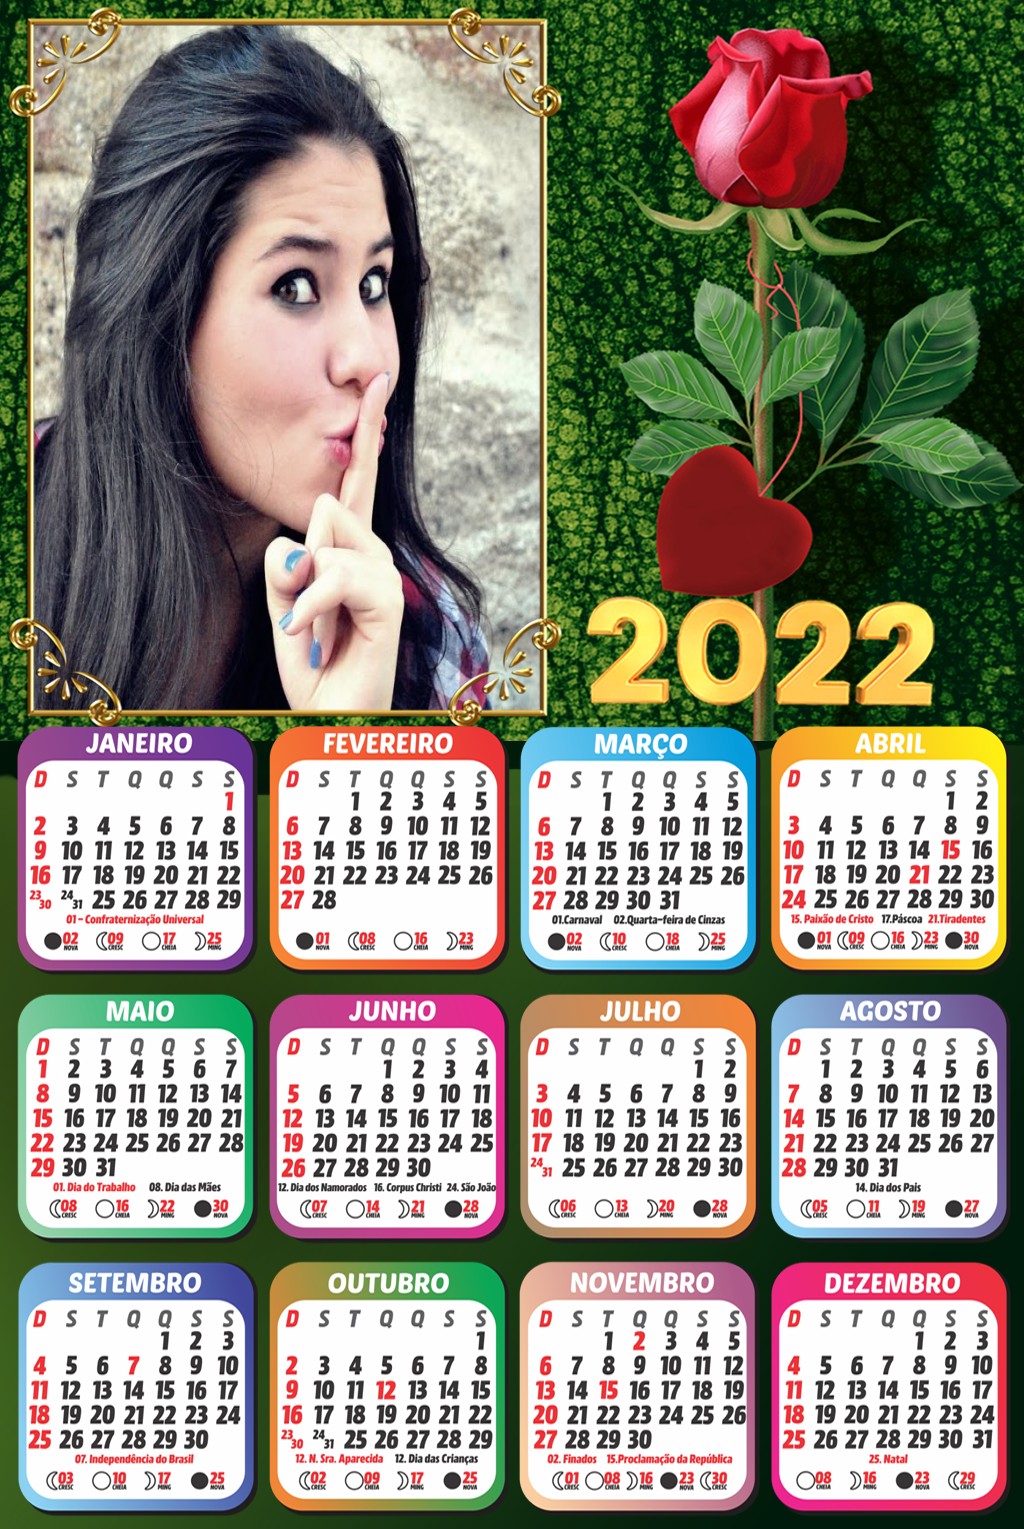 montar-foto-gratis-calendario-2022-rosa-vermelha